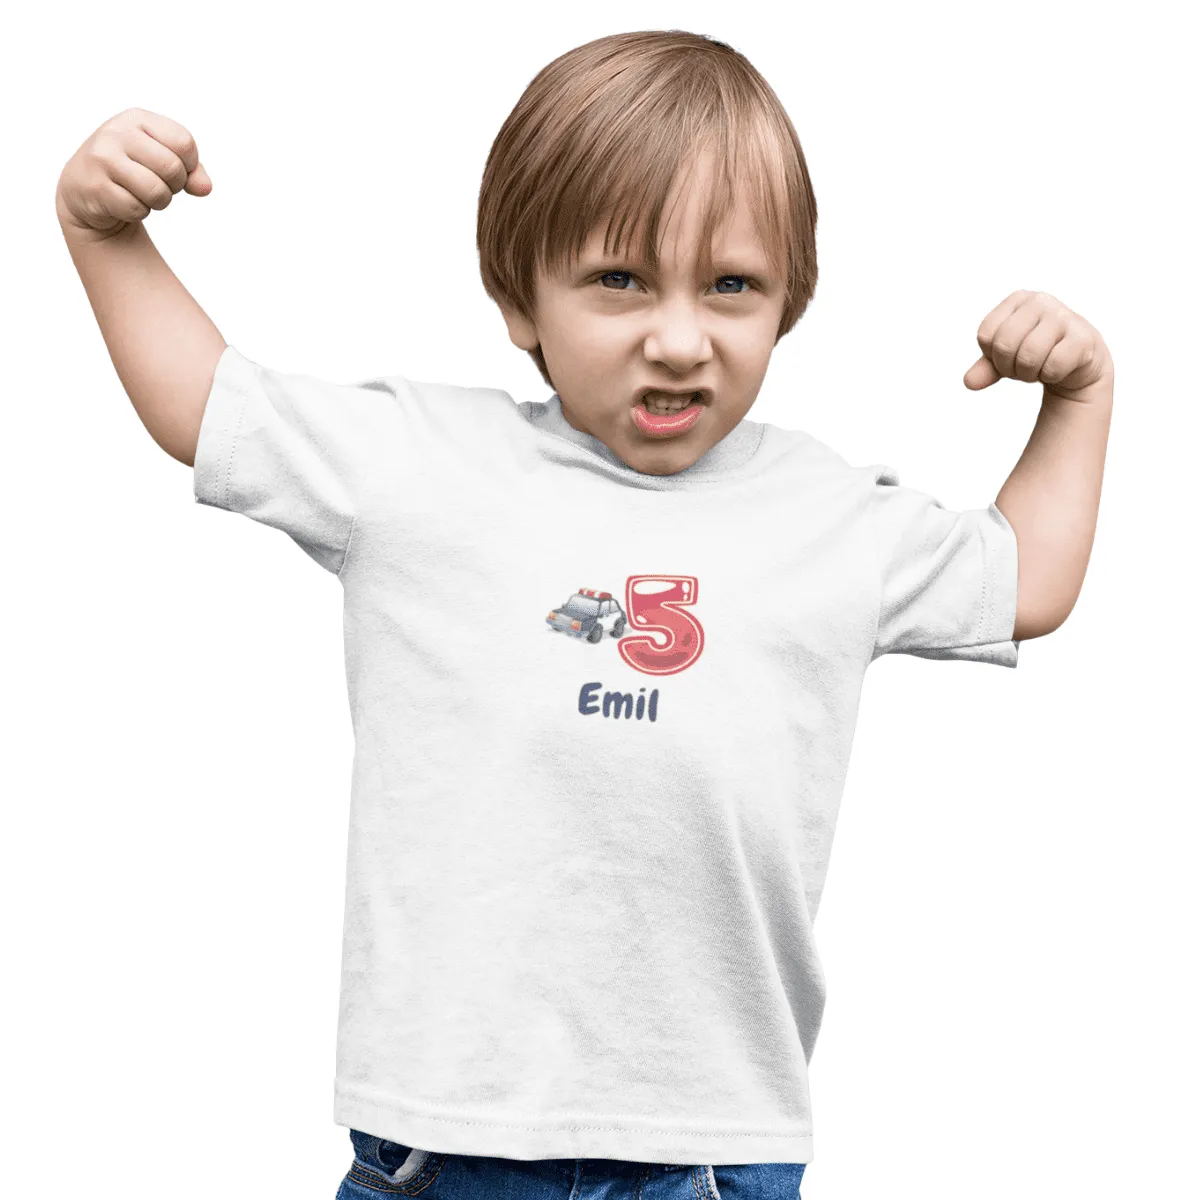 Kinder T-Shirt mit Wunschname und Alter - Design Polizei